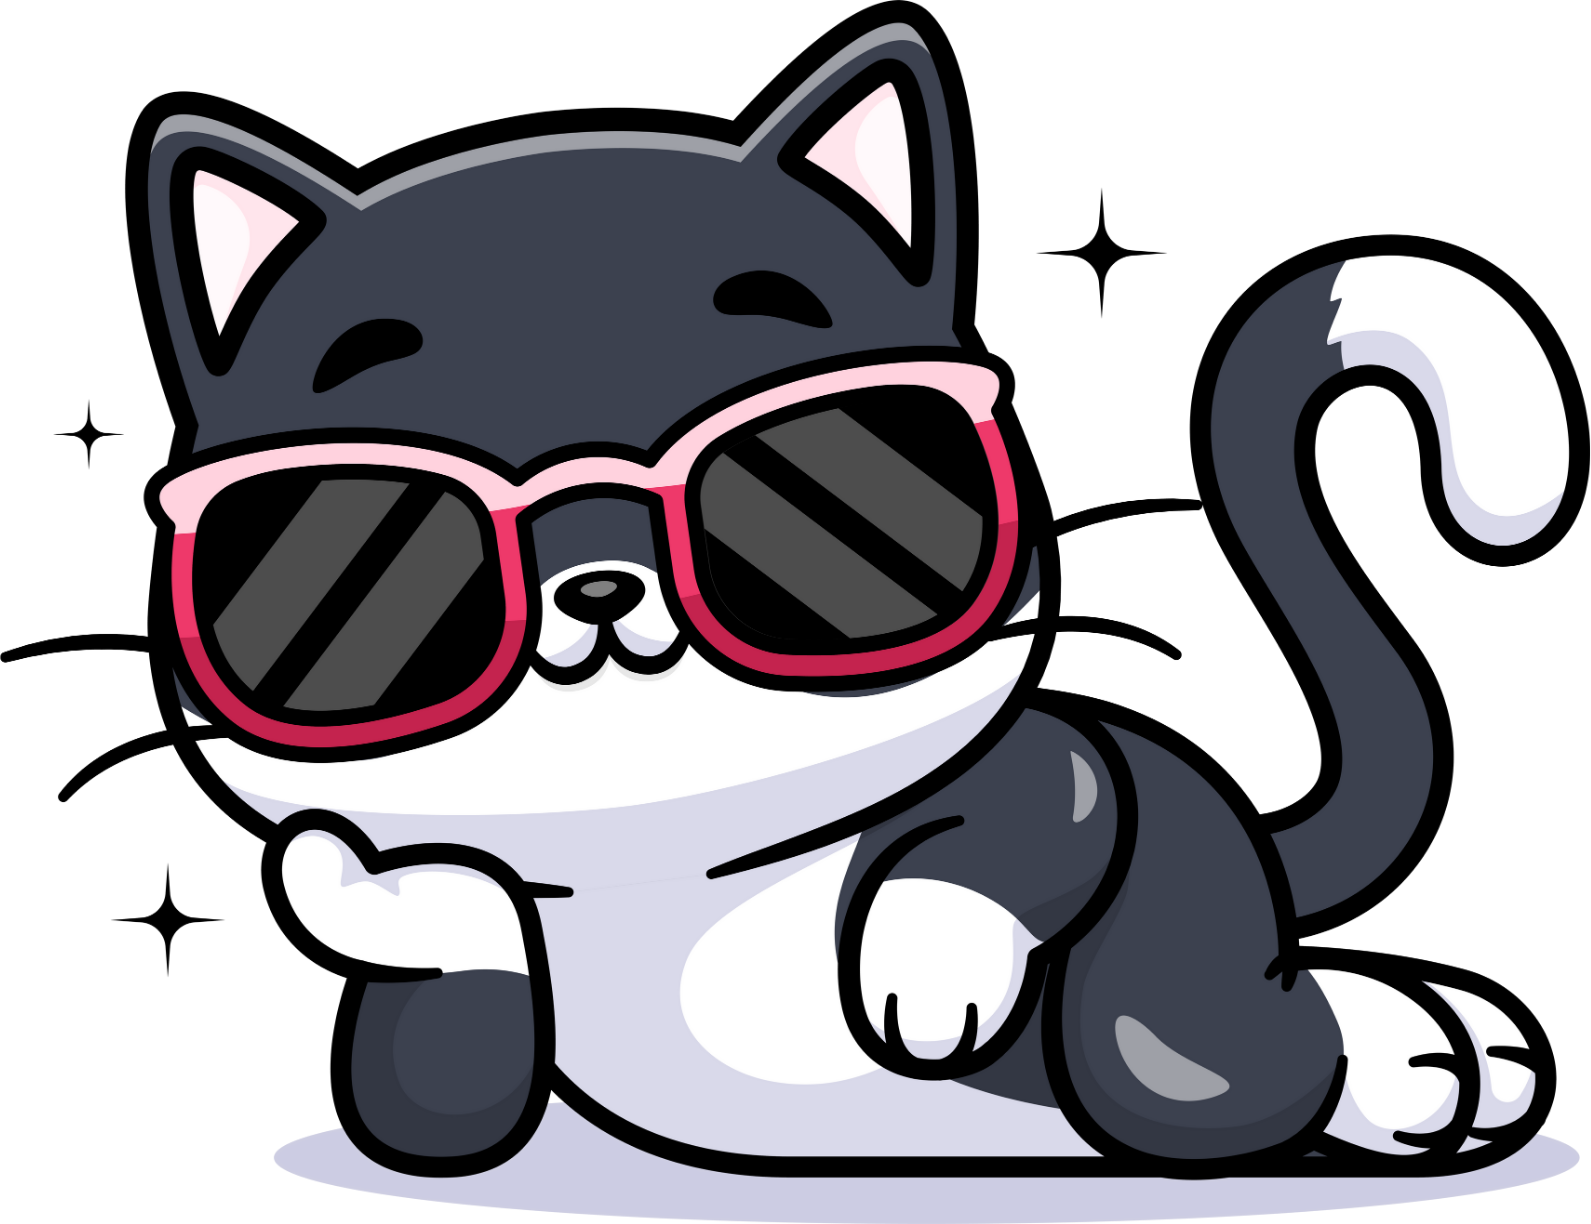 chat avec lunettes